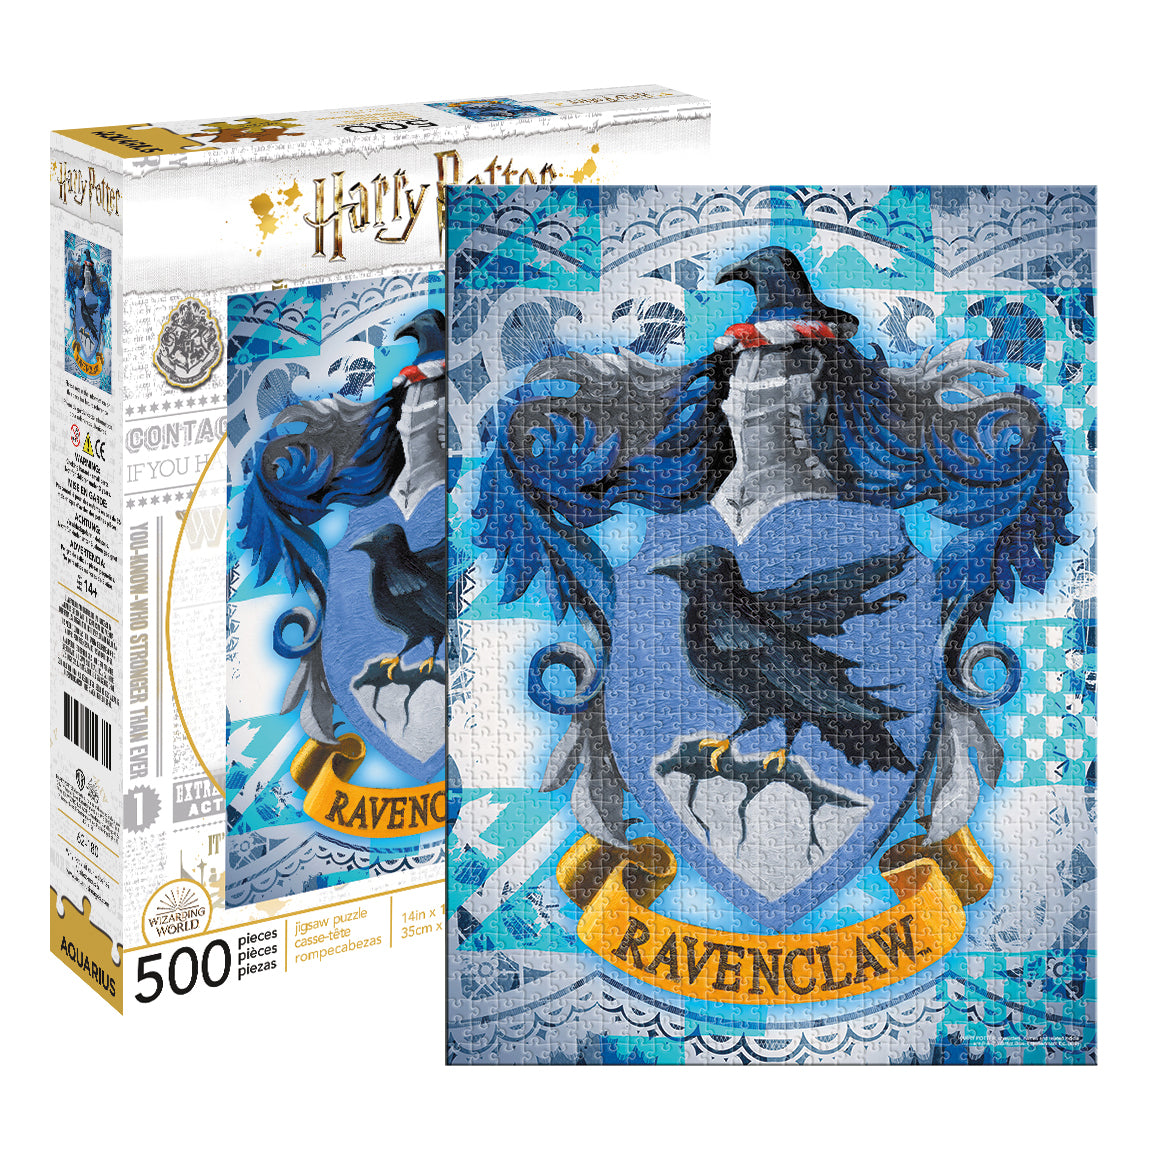 Harry Potter Ravenclaw Crest Jigsaw Puzzle 500 pieces